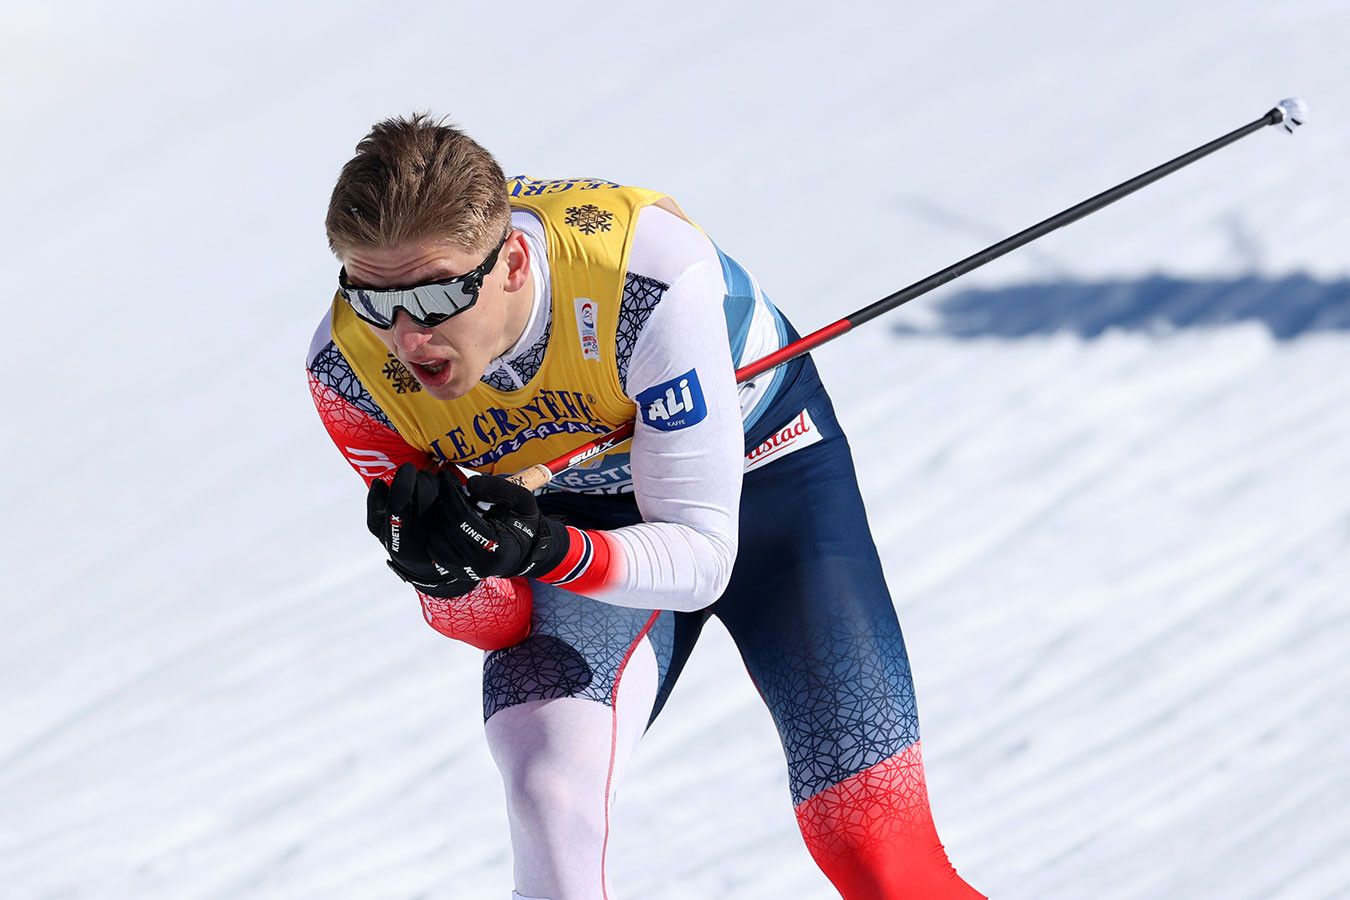 Норвежец Вальнес выиграл квалификацию в спринте на КМ в Швеции, Клебо — второй